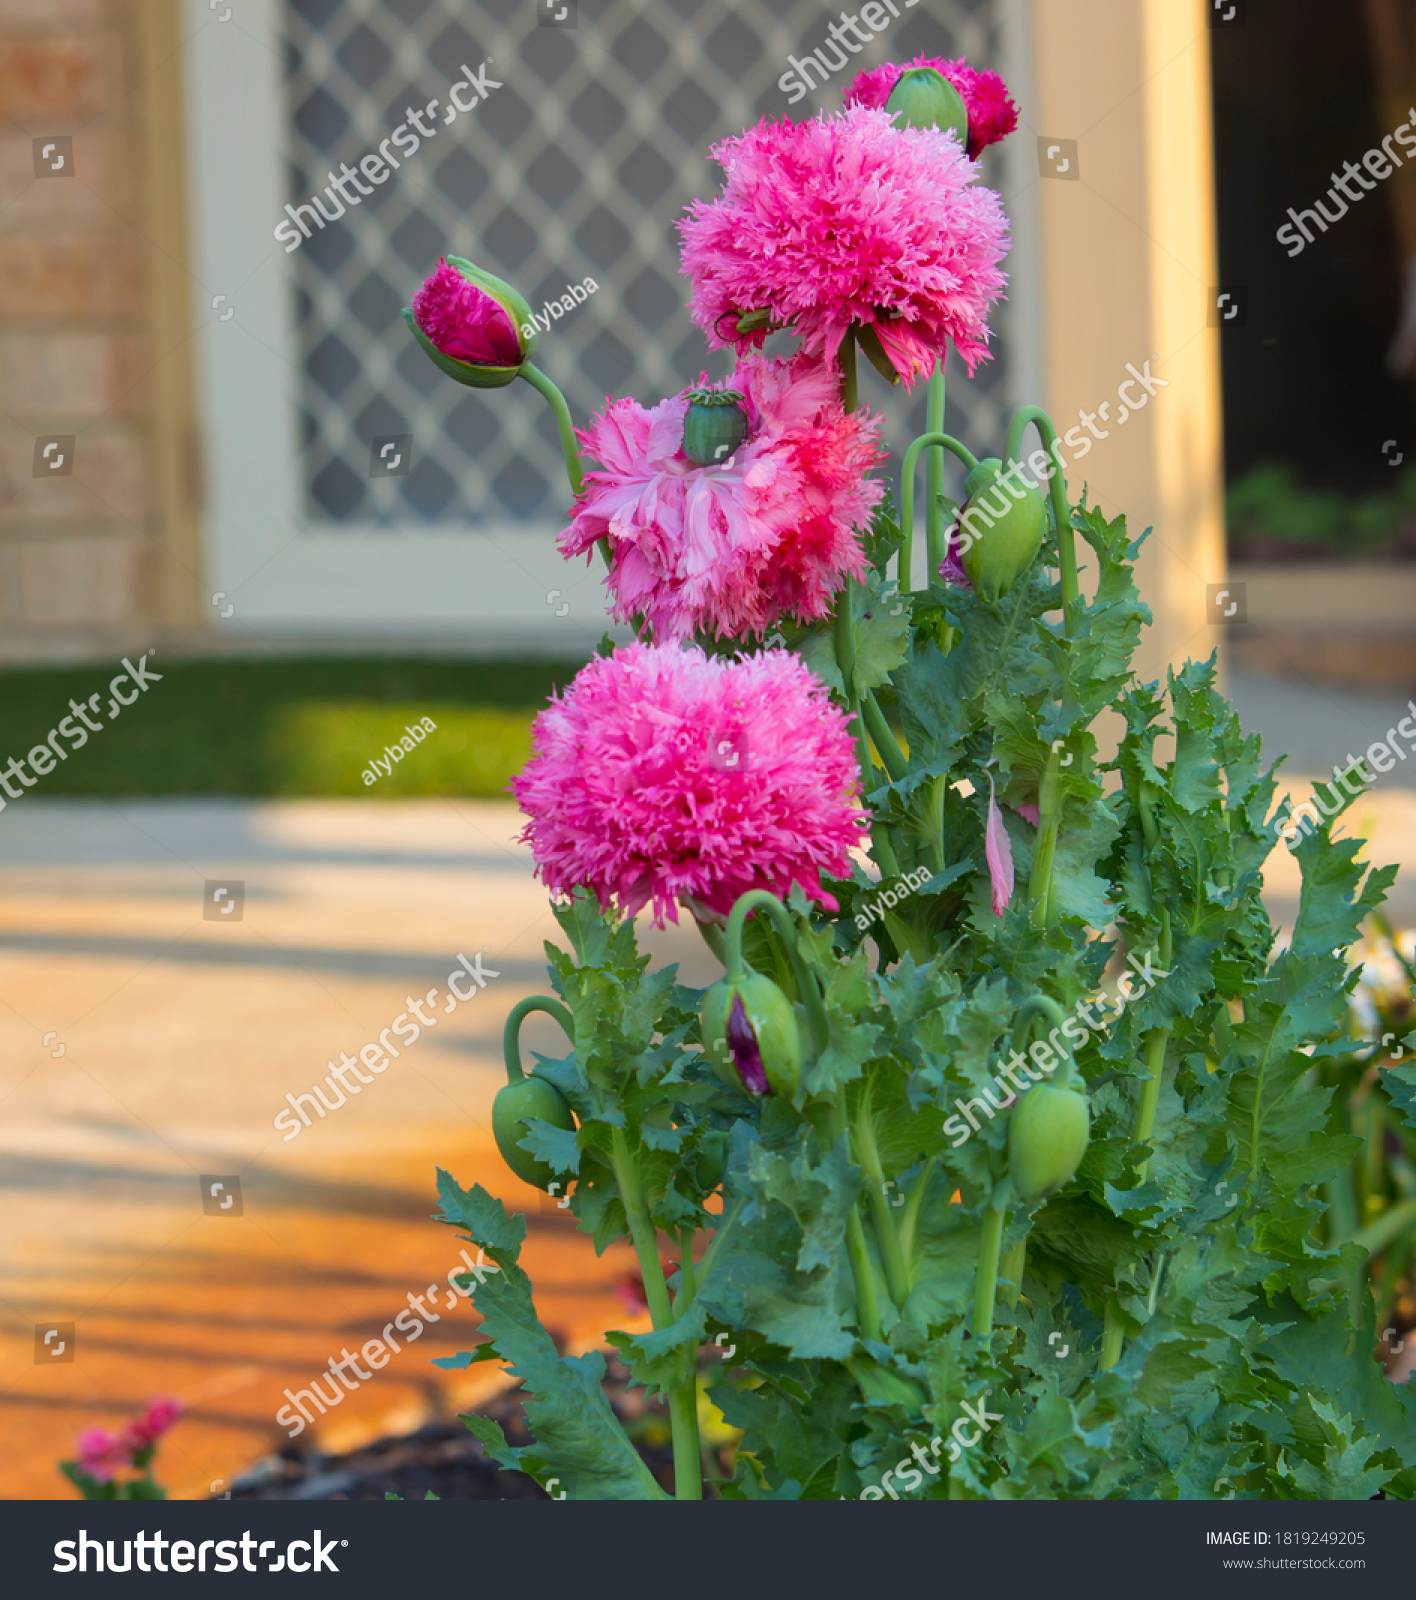 Pompom poppy Images, Stock & Shutterstock